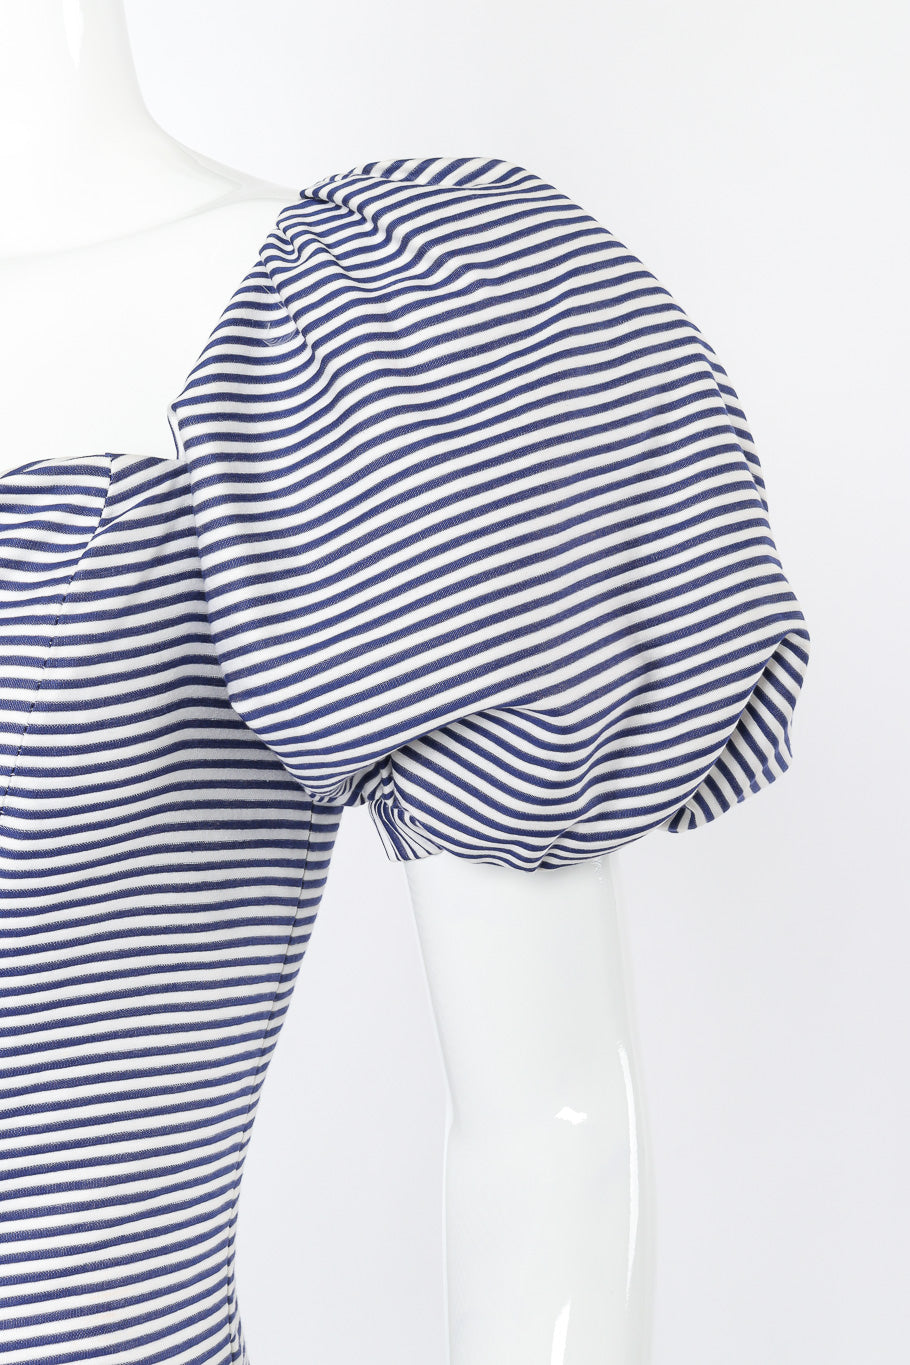 Vintage Yves Saint Laurent Sailor Stripe Corset Dress closeup sleeve @recessla